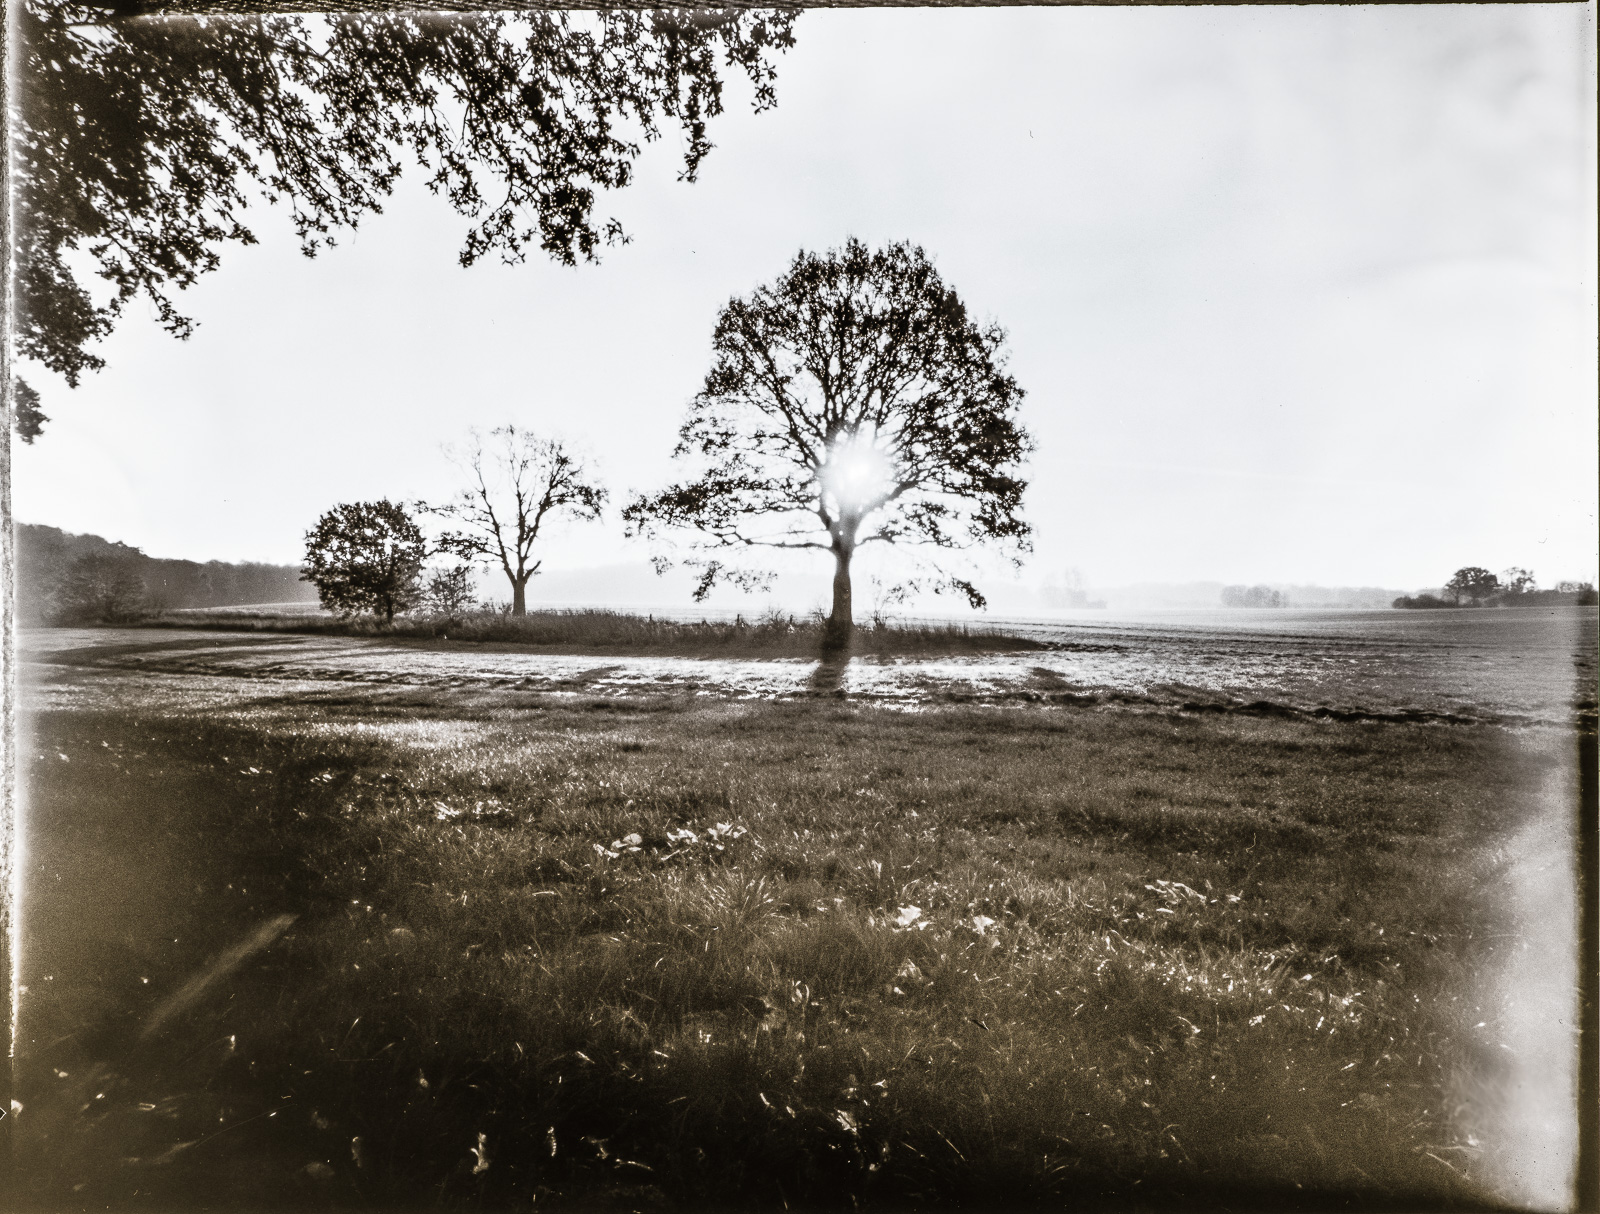 Ein Baum auf einer Wiese, dahinter steht die MorgenSonne und strahlt zwischen den Ästen durch. Links oben überhängende Blätter eines anderen Baums. Das Foto ist schwarz-weiß und etwas diffus-unscharf, weil es mit einer Lochkamera aufgenommen wurde.